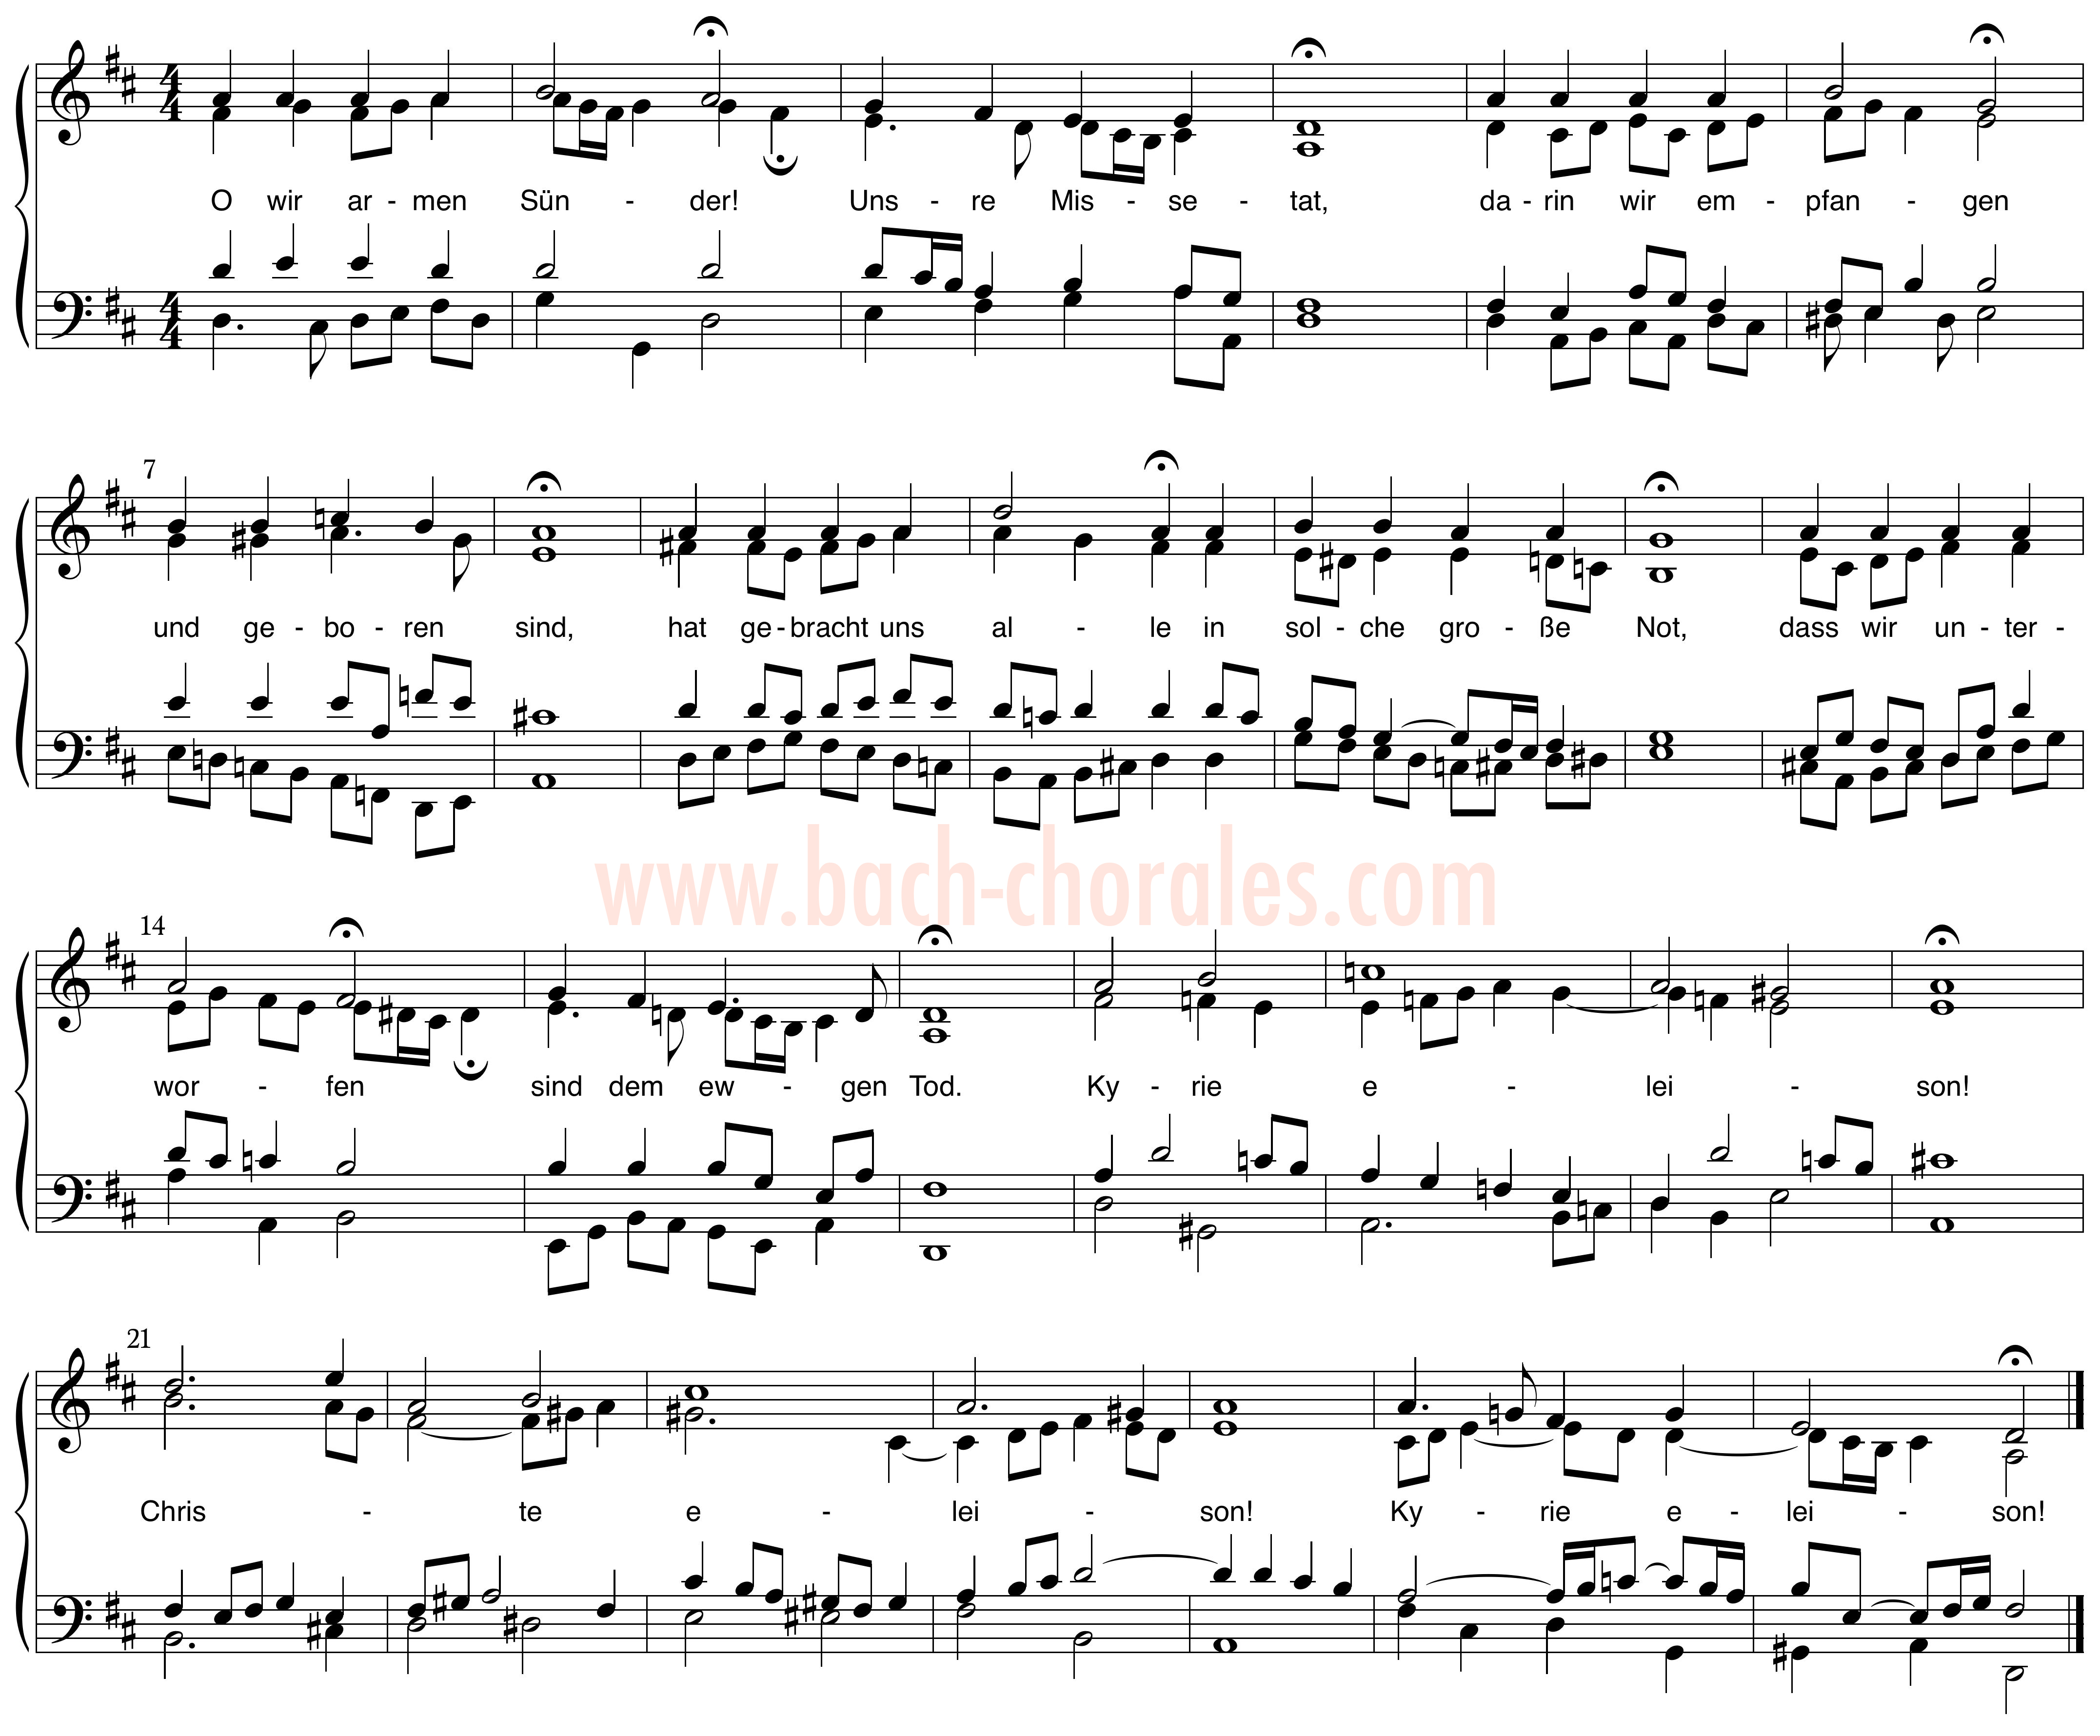 notenbeeld BWV 407 op https://www.bach-chorales.com/